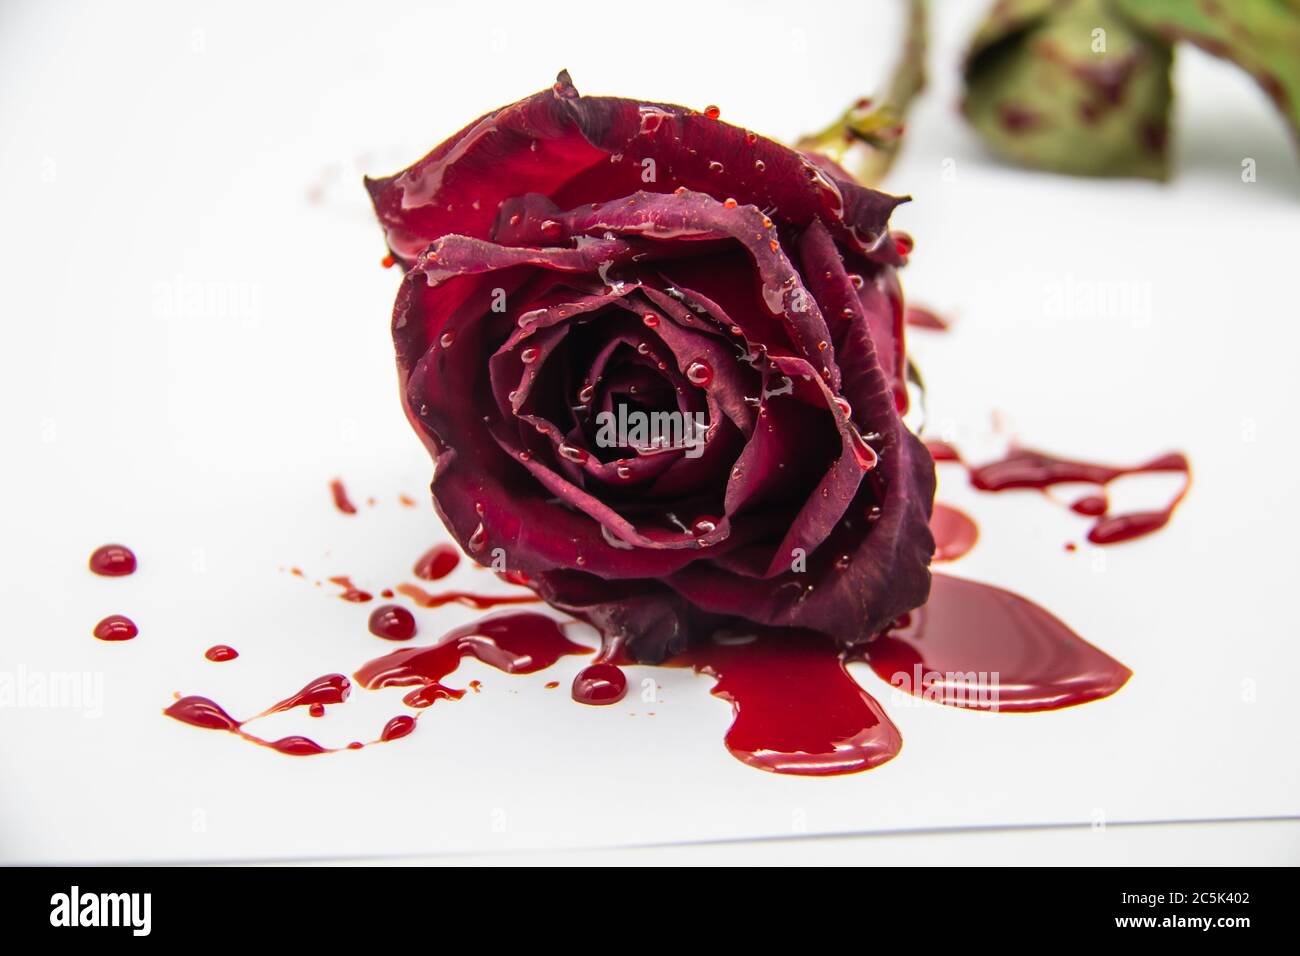 Wallpaper flower blood rose images for desktop section цветы  download